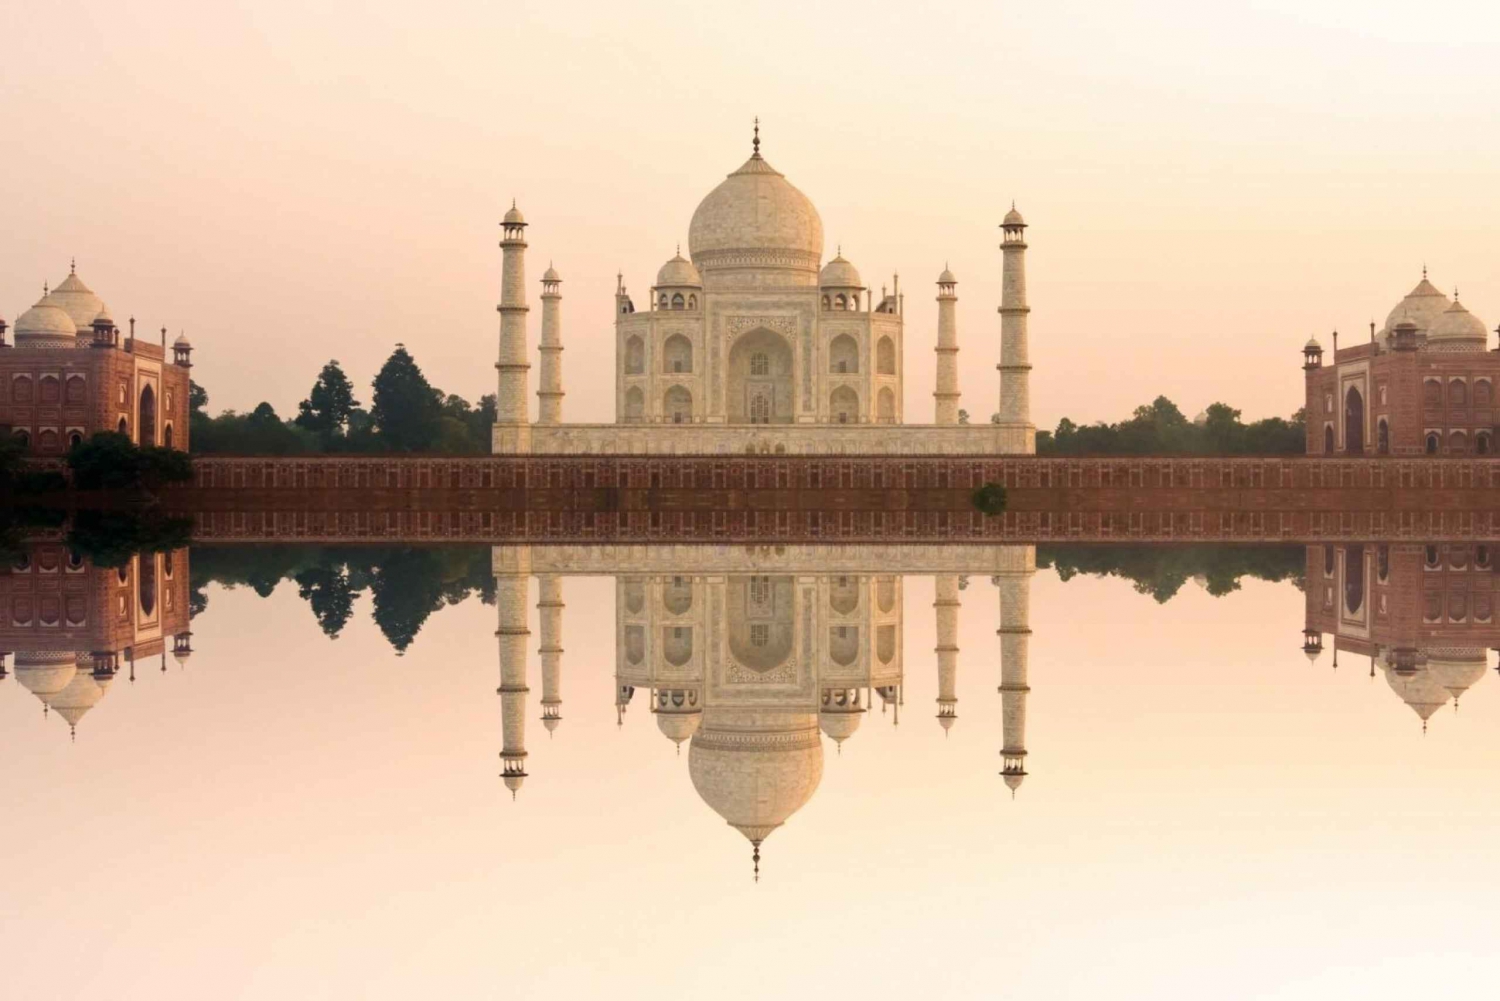 From Jaipur: Taj Mahal Sunrise Tour from Jaipur